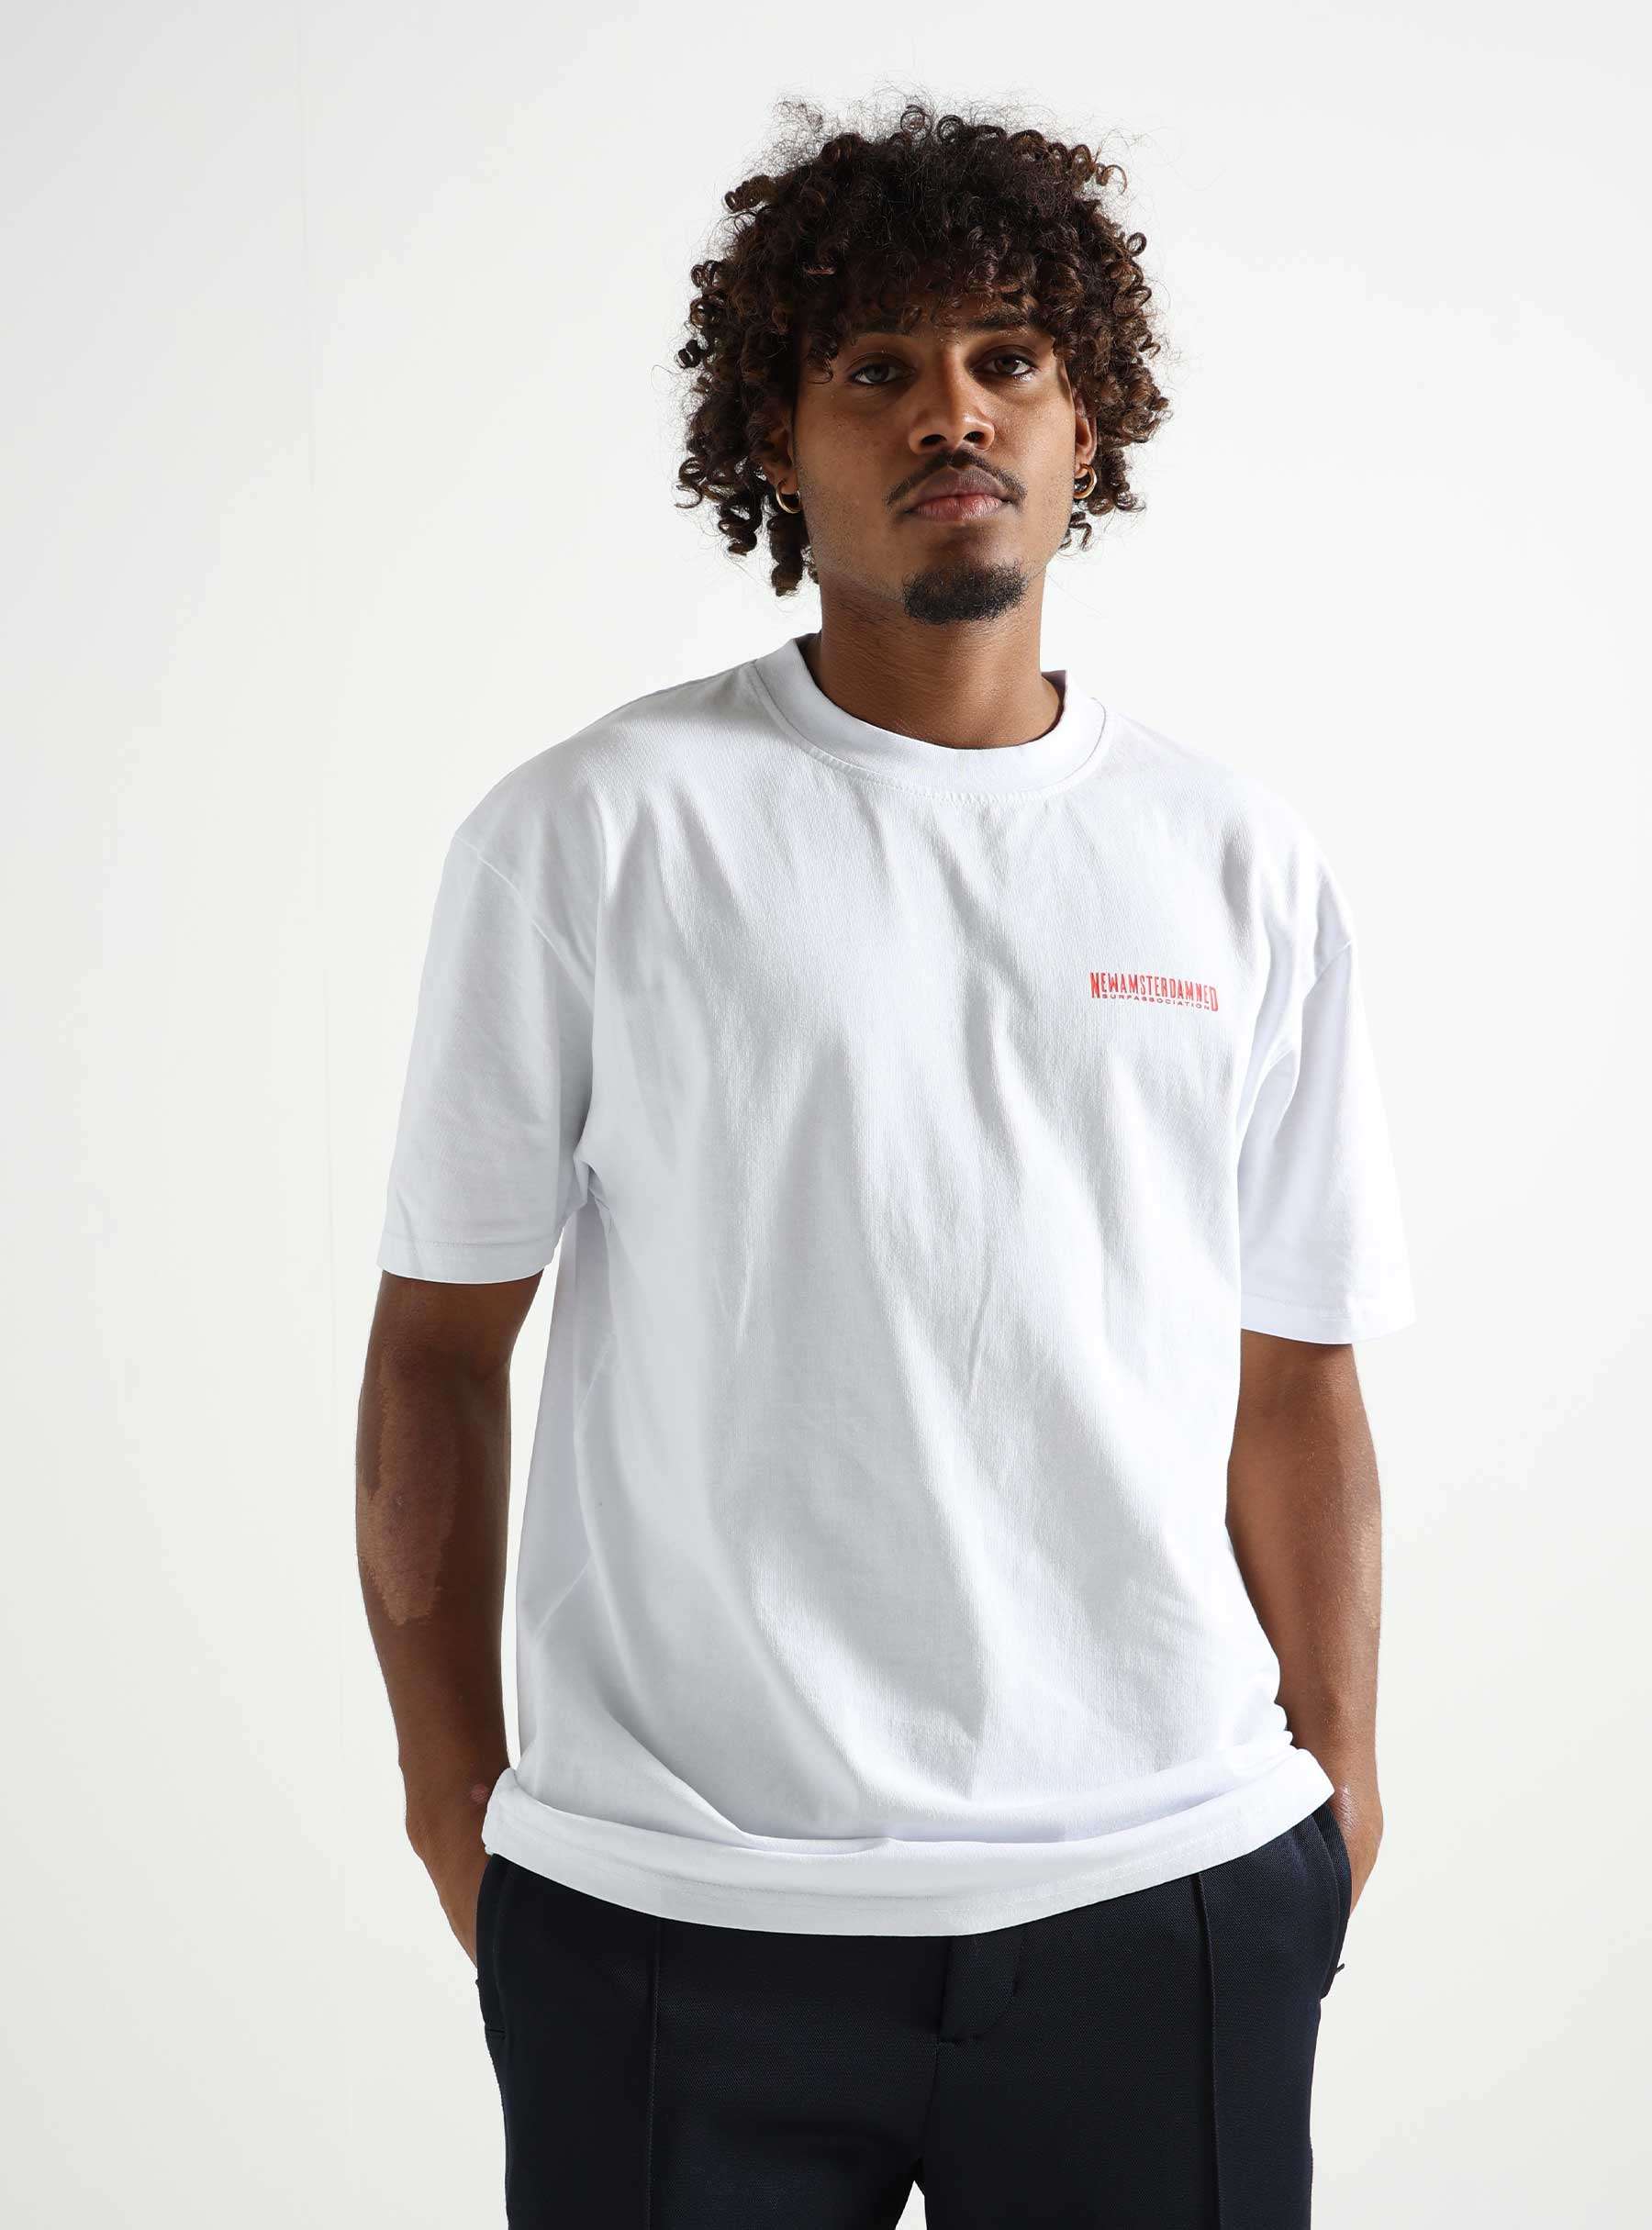 Nasa Tourist T-shirt White 2401114001